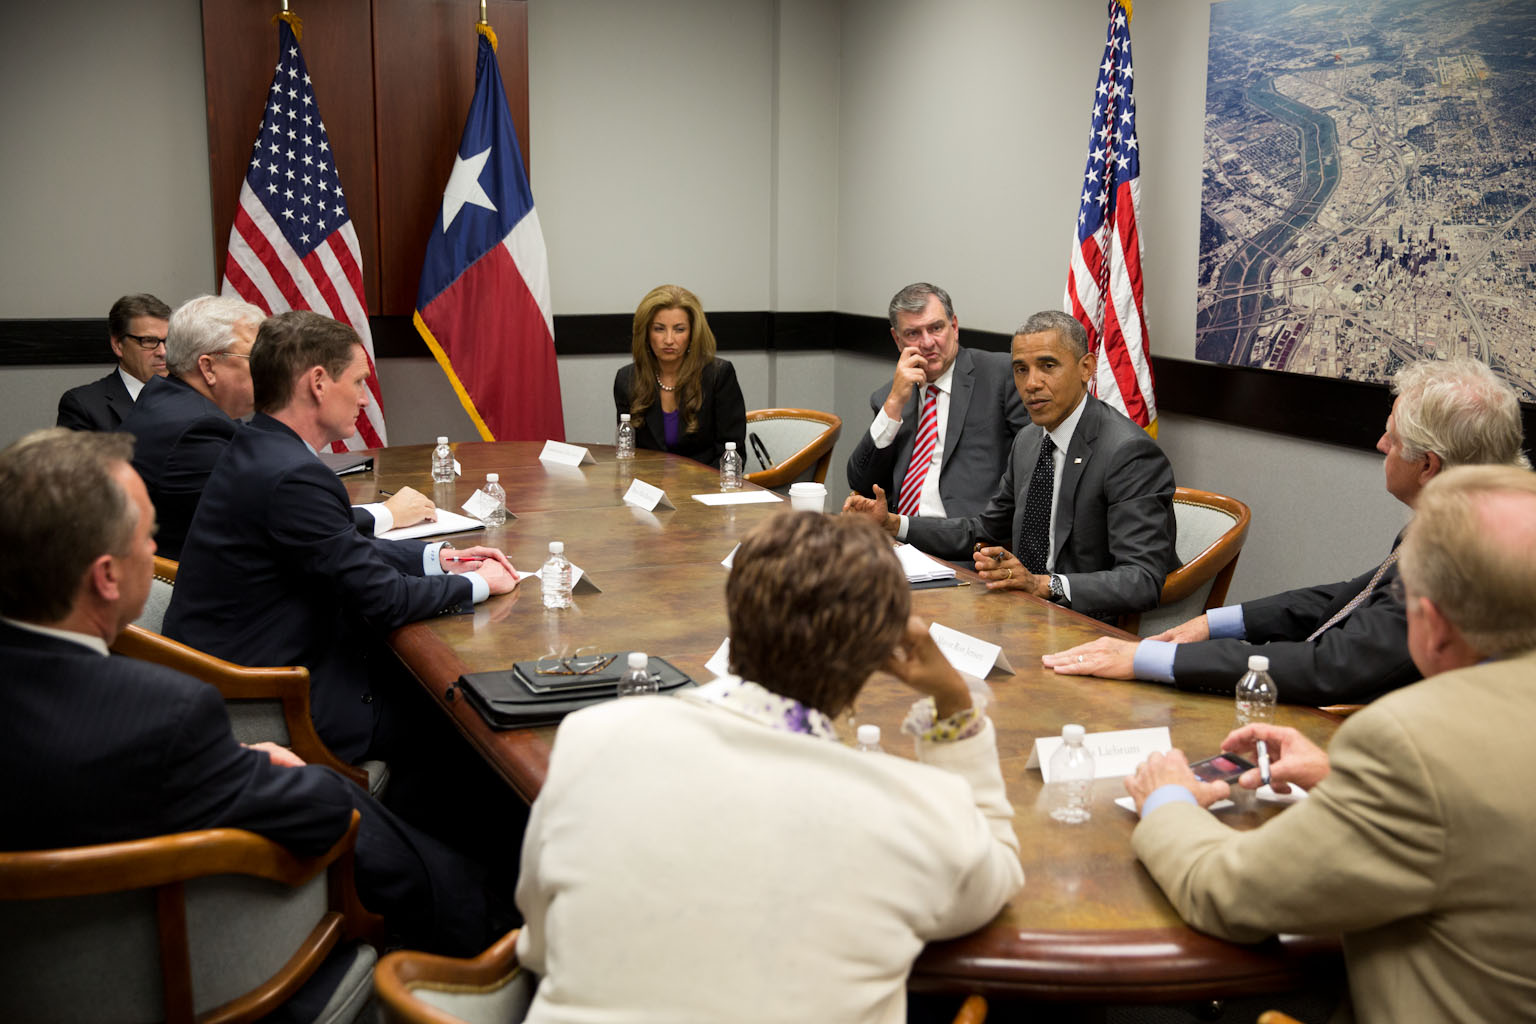 El Presidente Barack Obama preside una reunión con las autoridades de Texas en Dallas